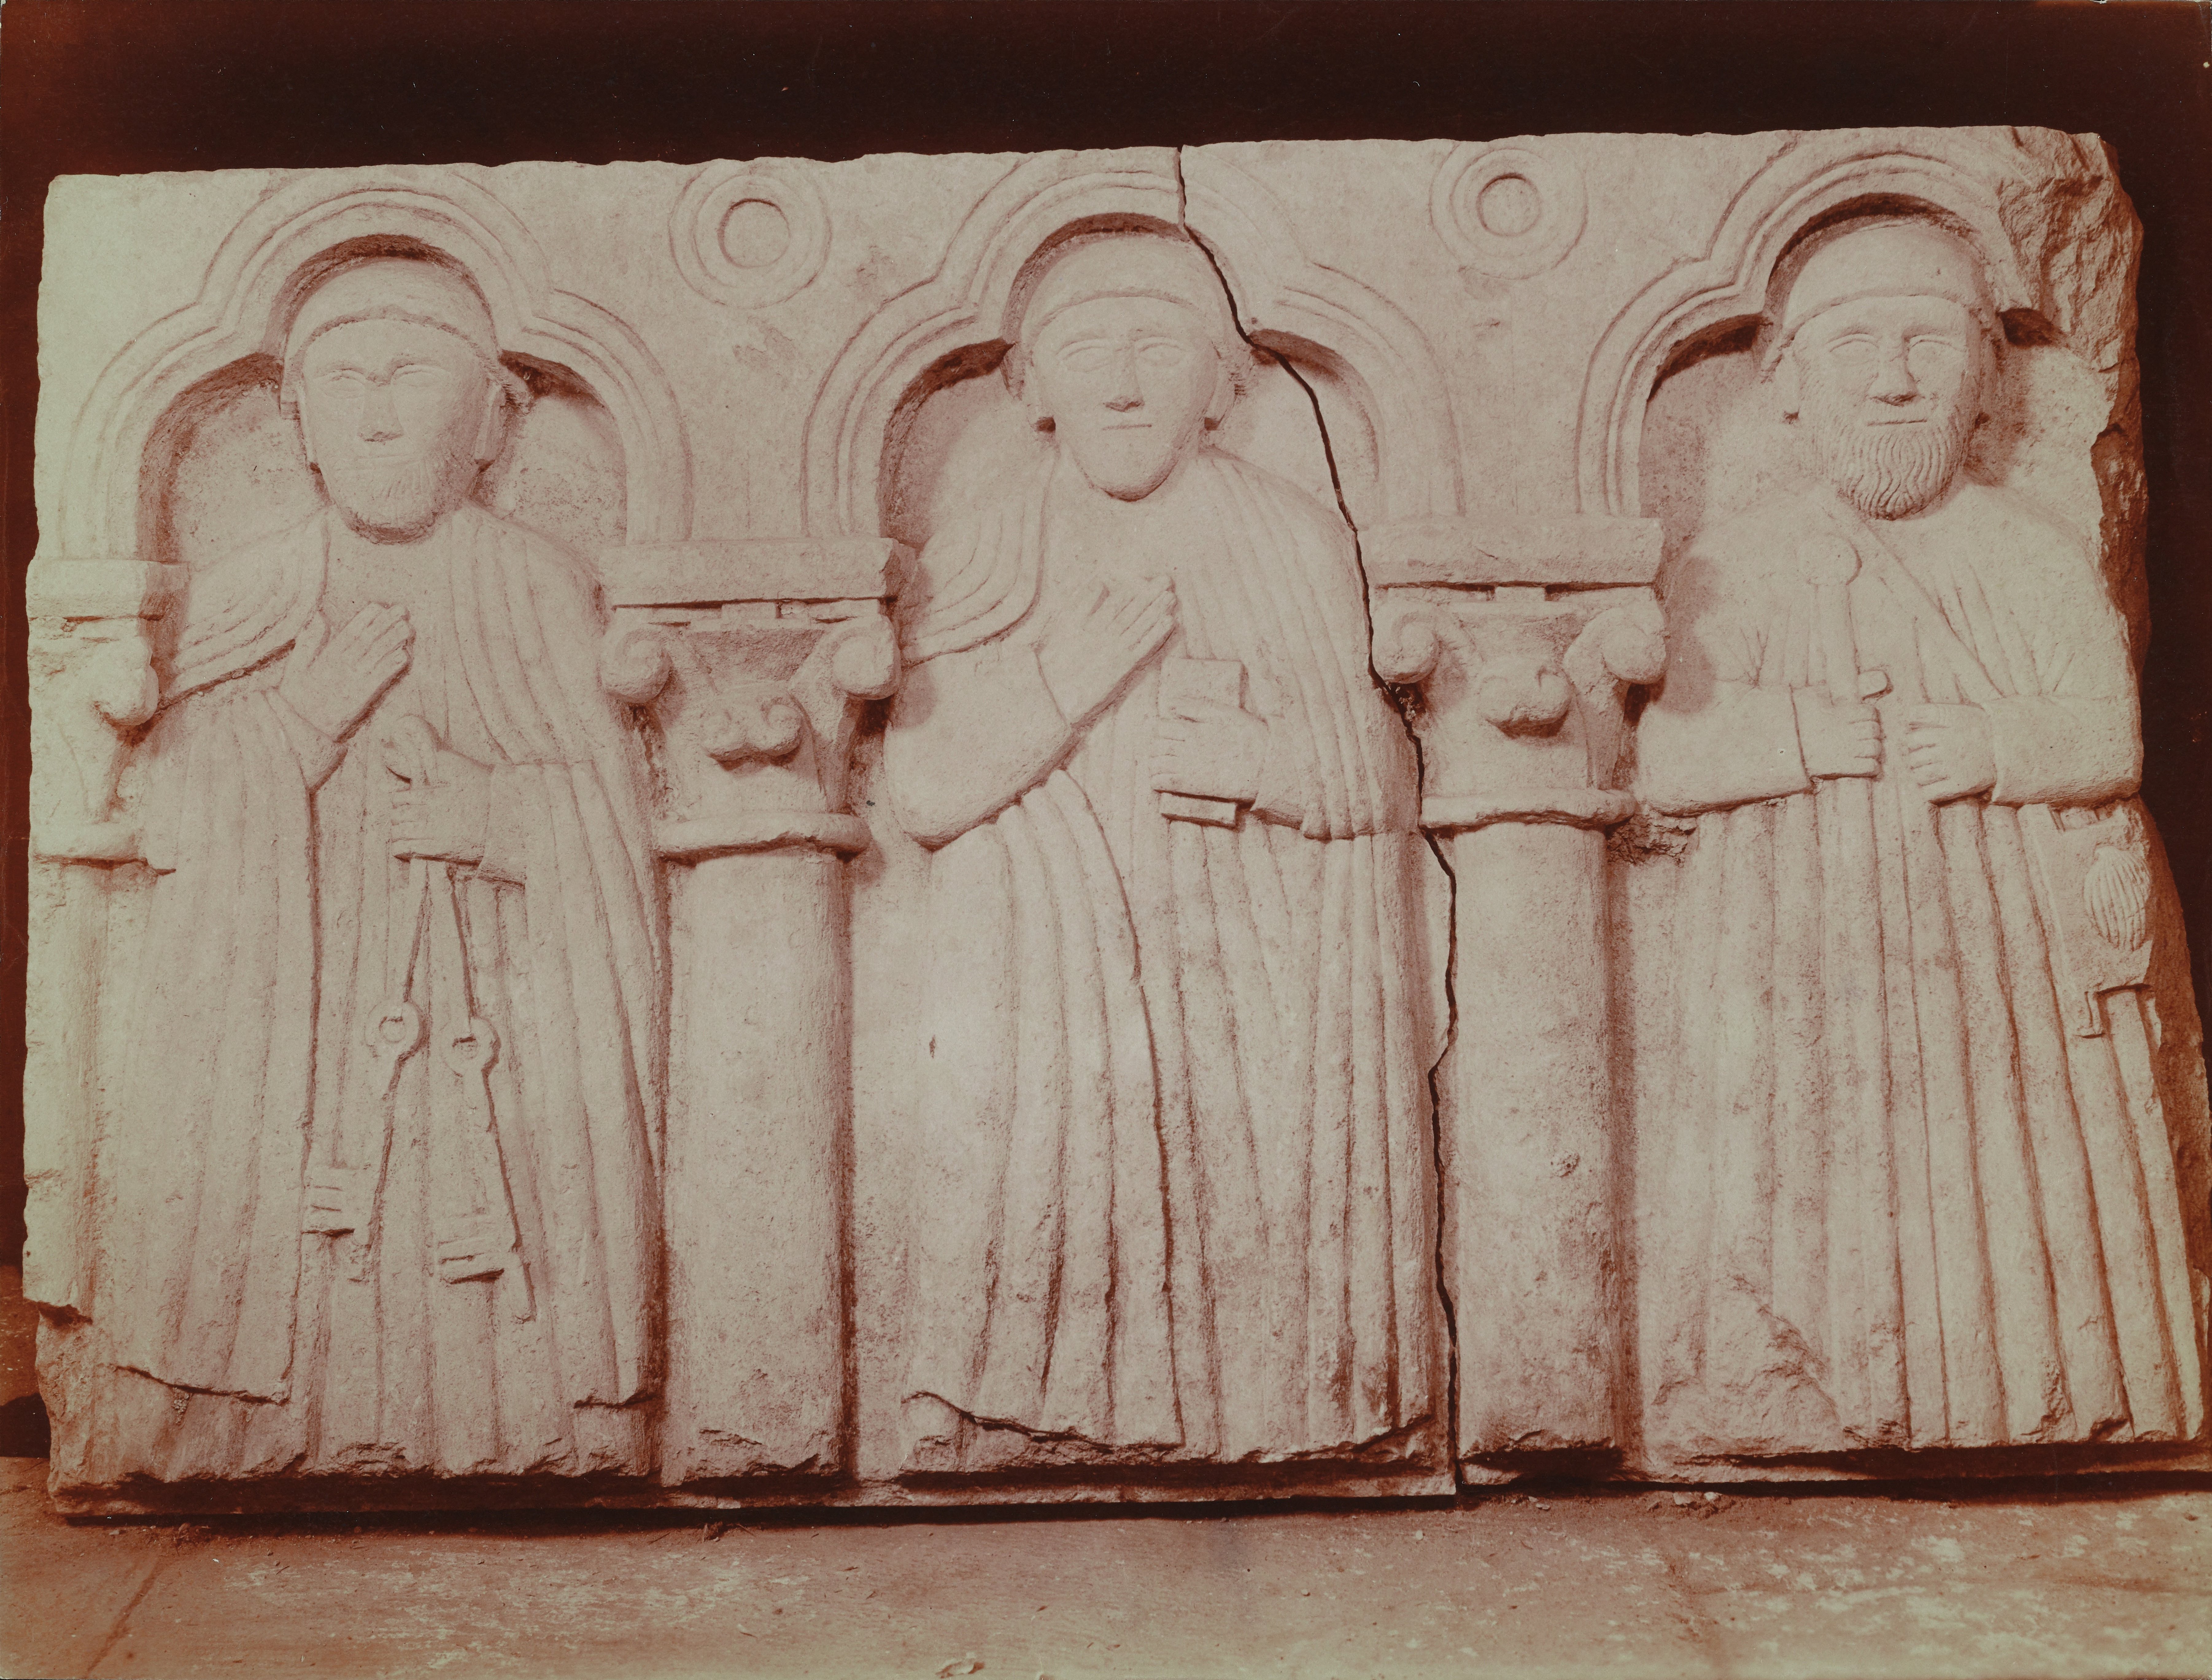 Fotografo non identificato, Ruvo di Puglia - Cattedrale S. Maria Assunta, frammenti di un vecchio altare, 1901-1910, albumina, MPI6091670